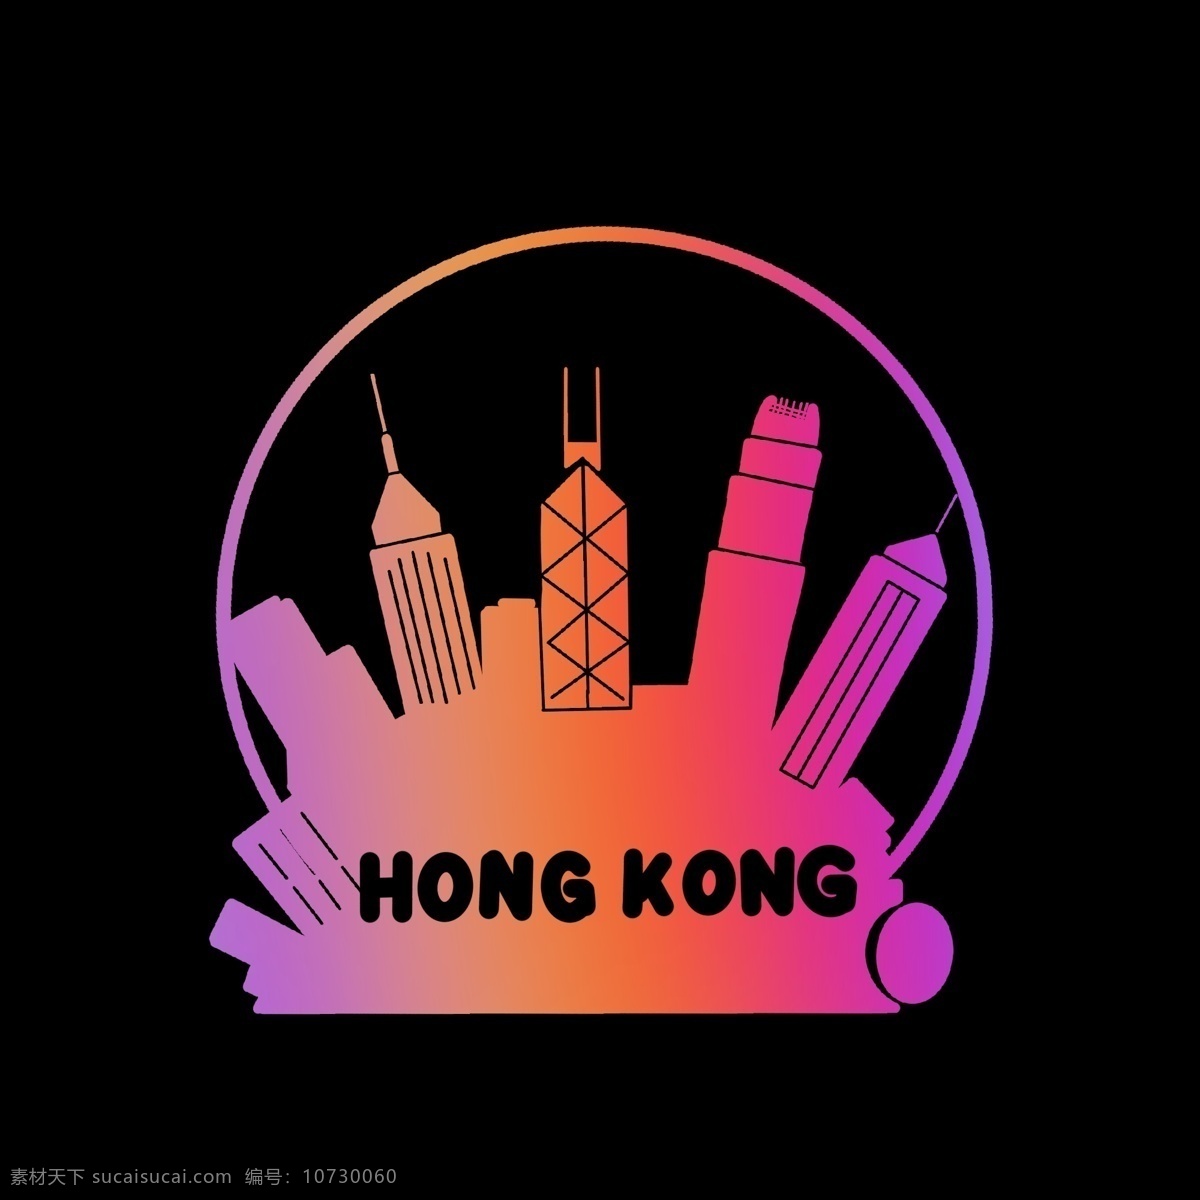 暖色 香港 英文 城市 剪影 渐变 彩色 形象 几何图形 卡通 简洁 简单 简约 中国 城市标志